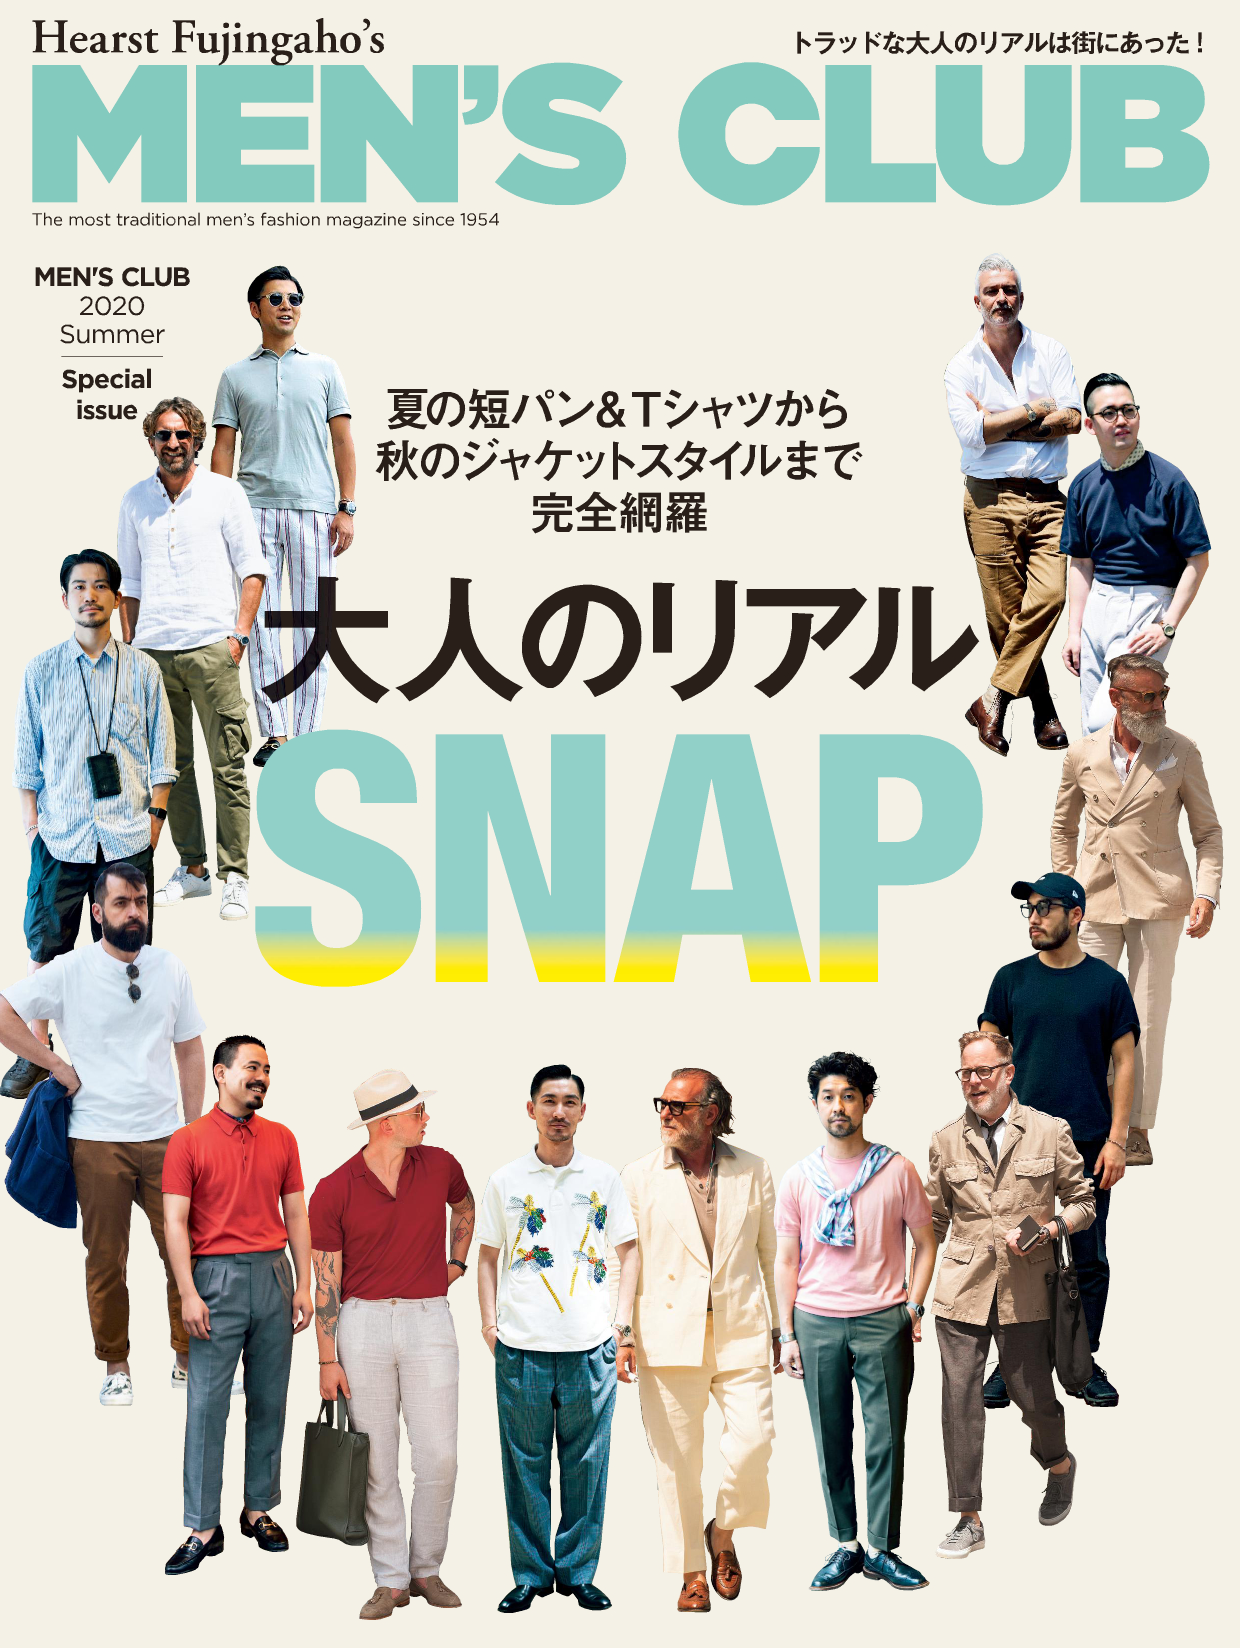 Men S Club 特別デジタル版 大人のリアルsnap を7月25日 土 に発売 株式会社ハースト婦人画報社のプレスリリース